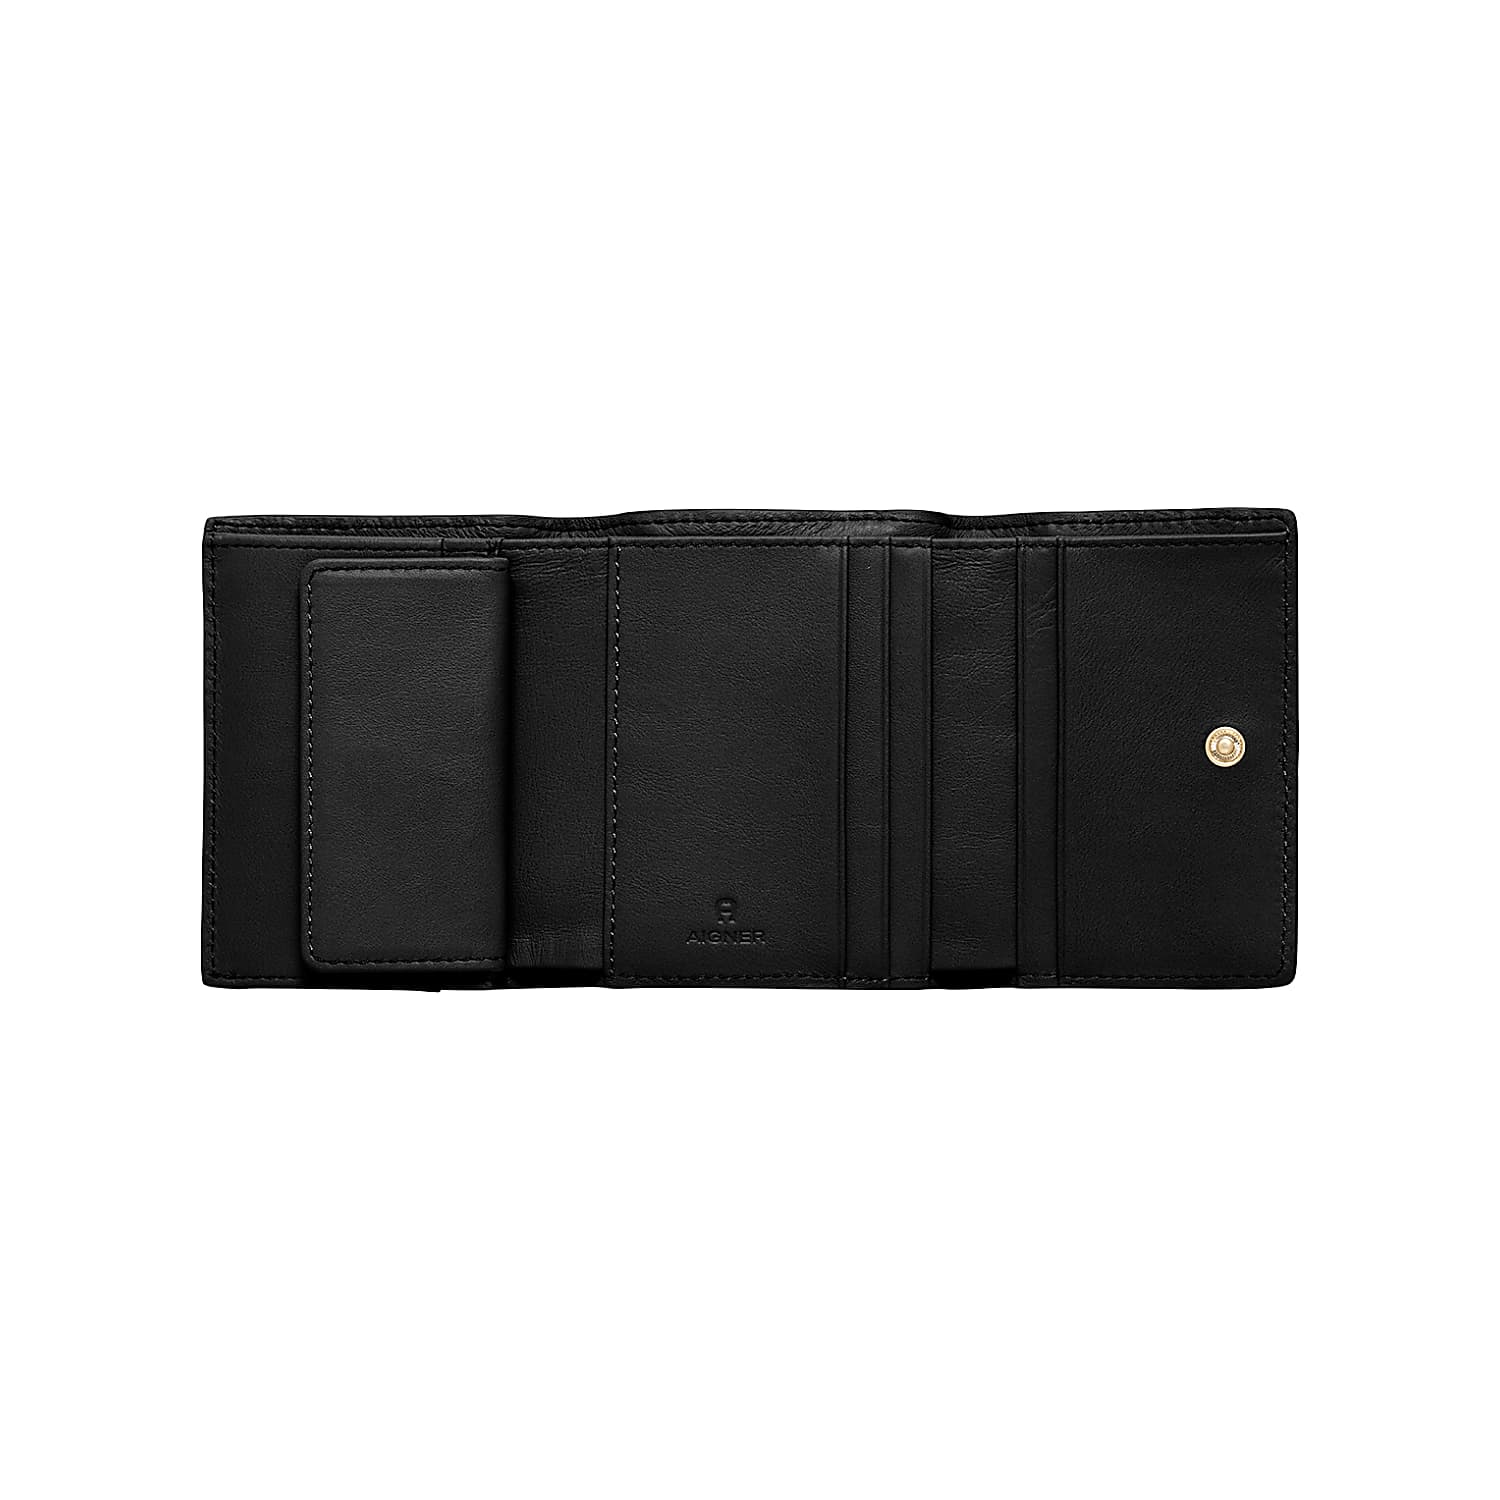 Diadora wallet